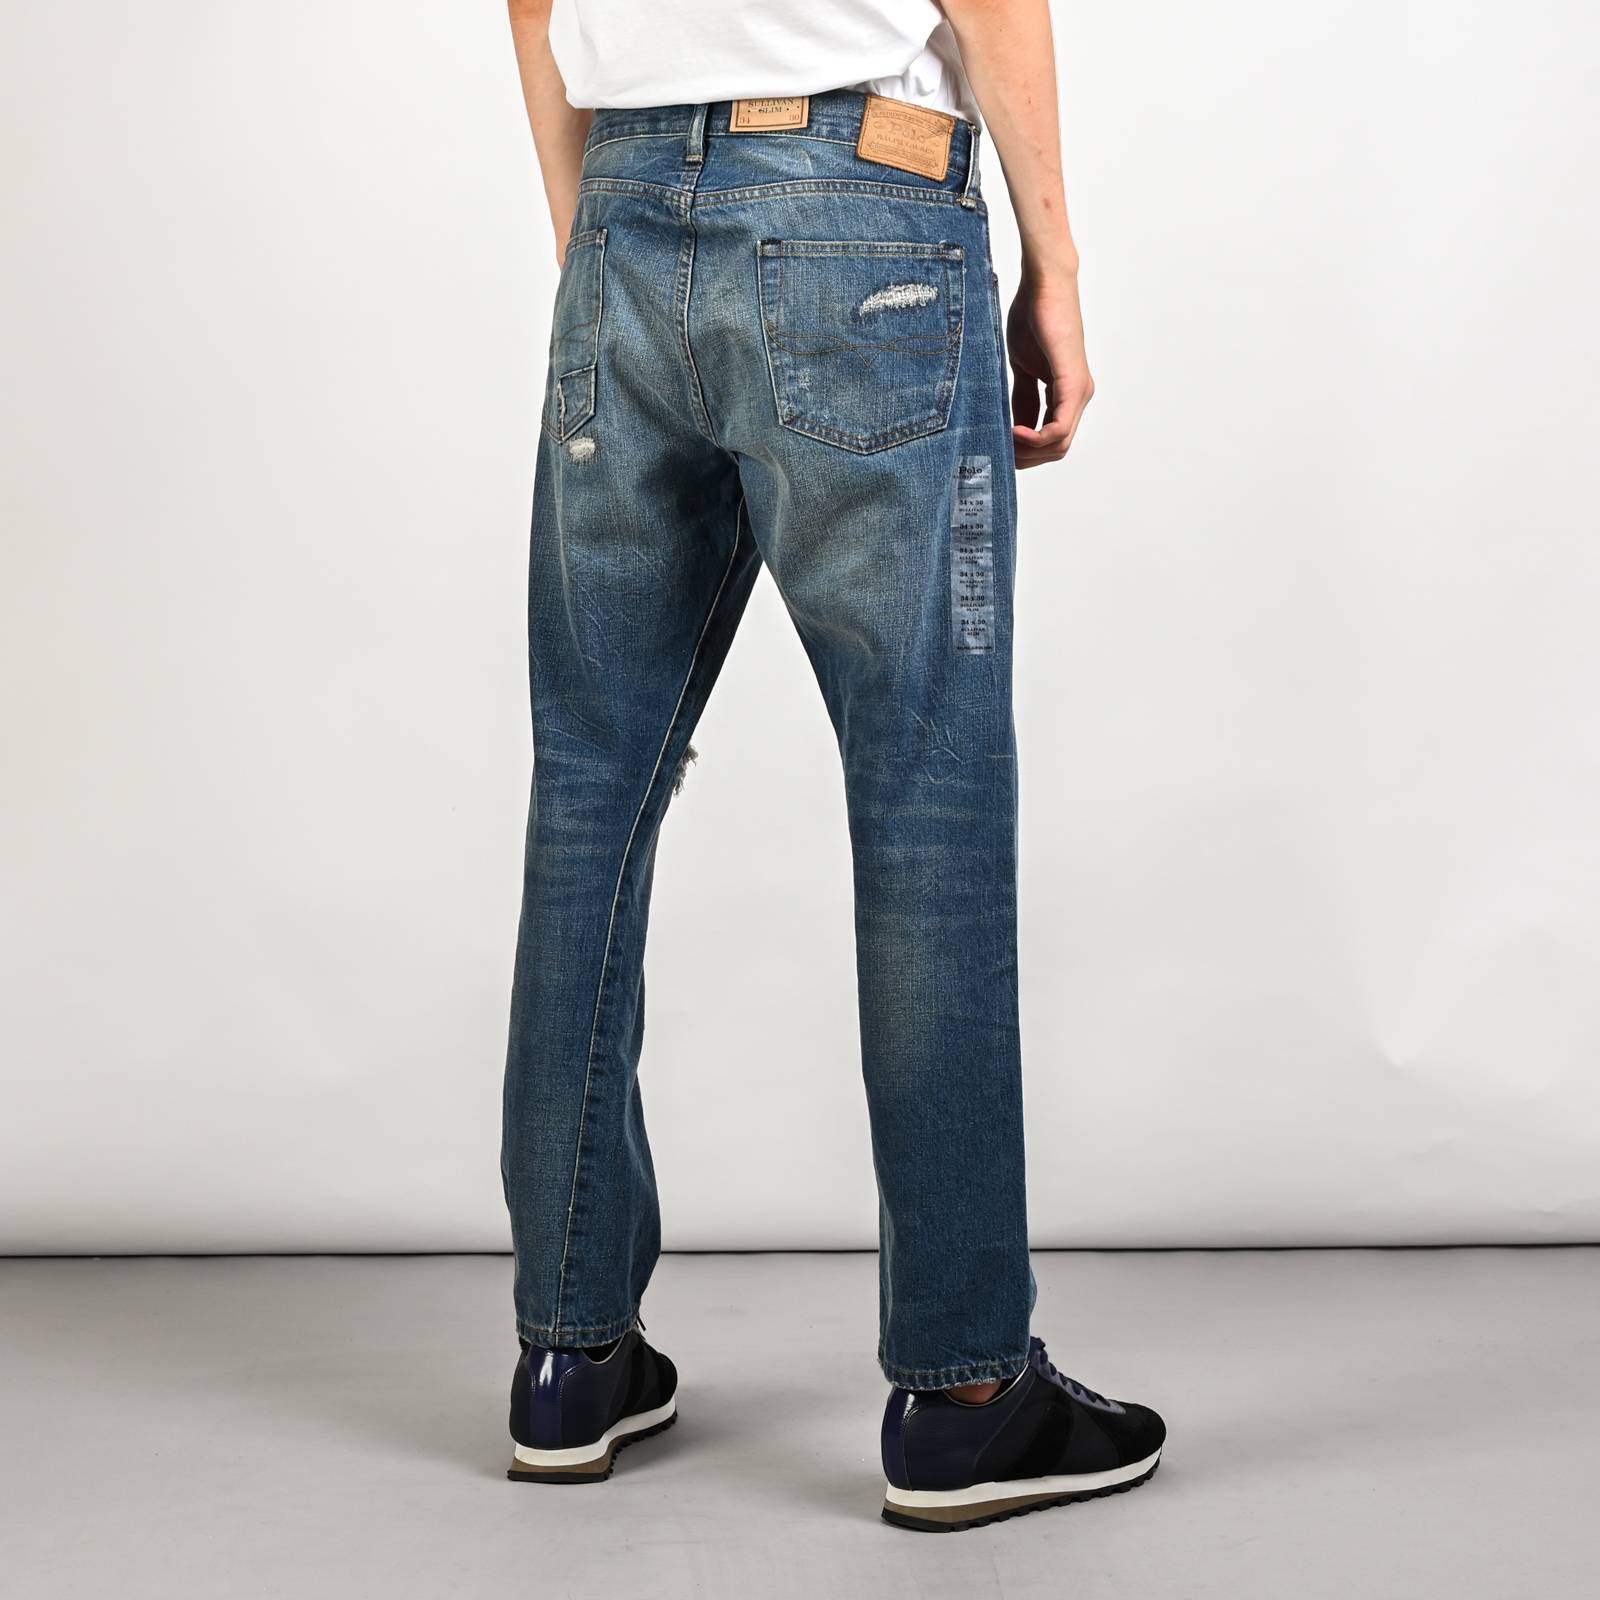 Фирменные джинсы мужские